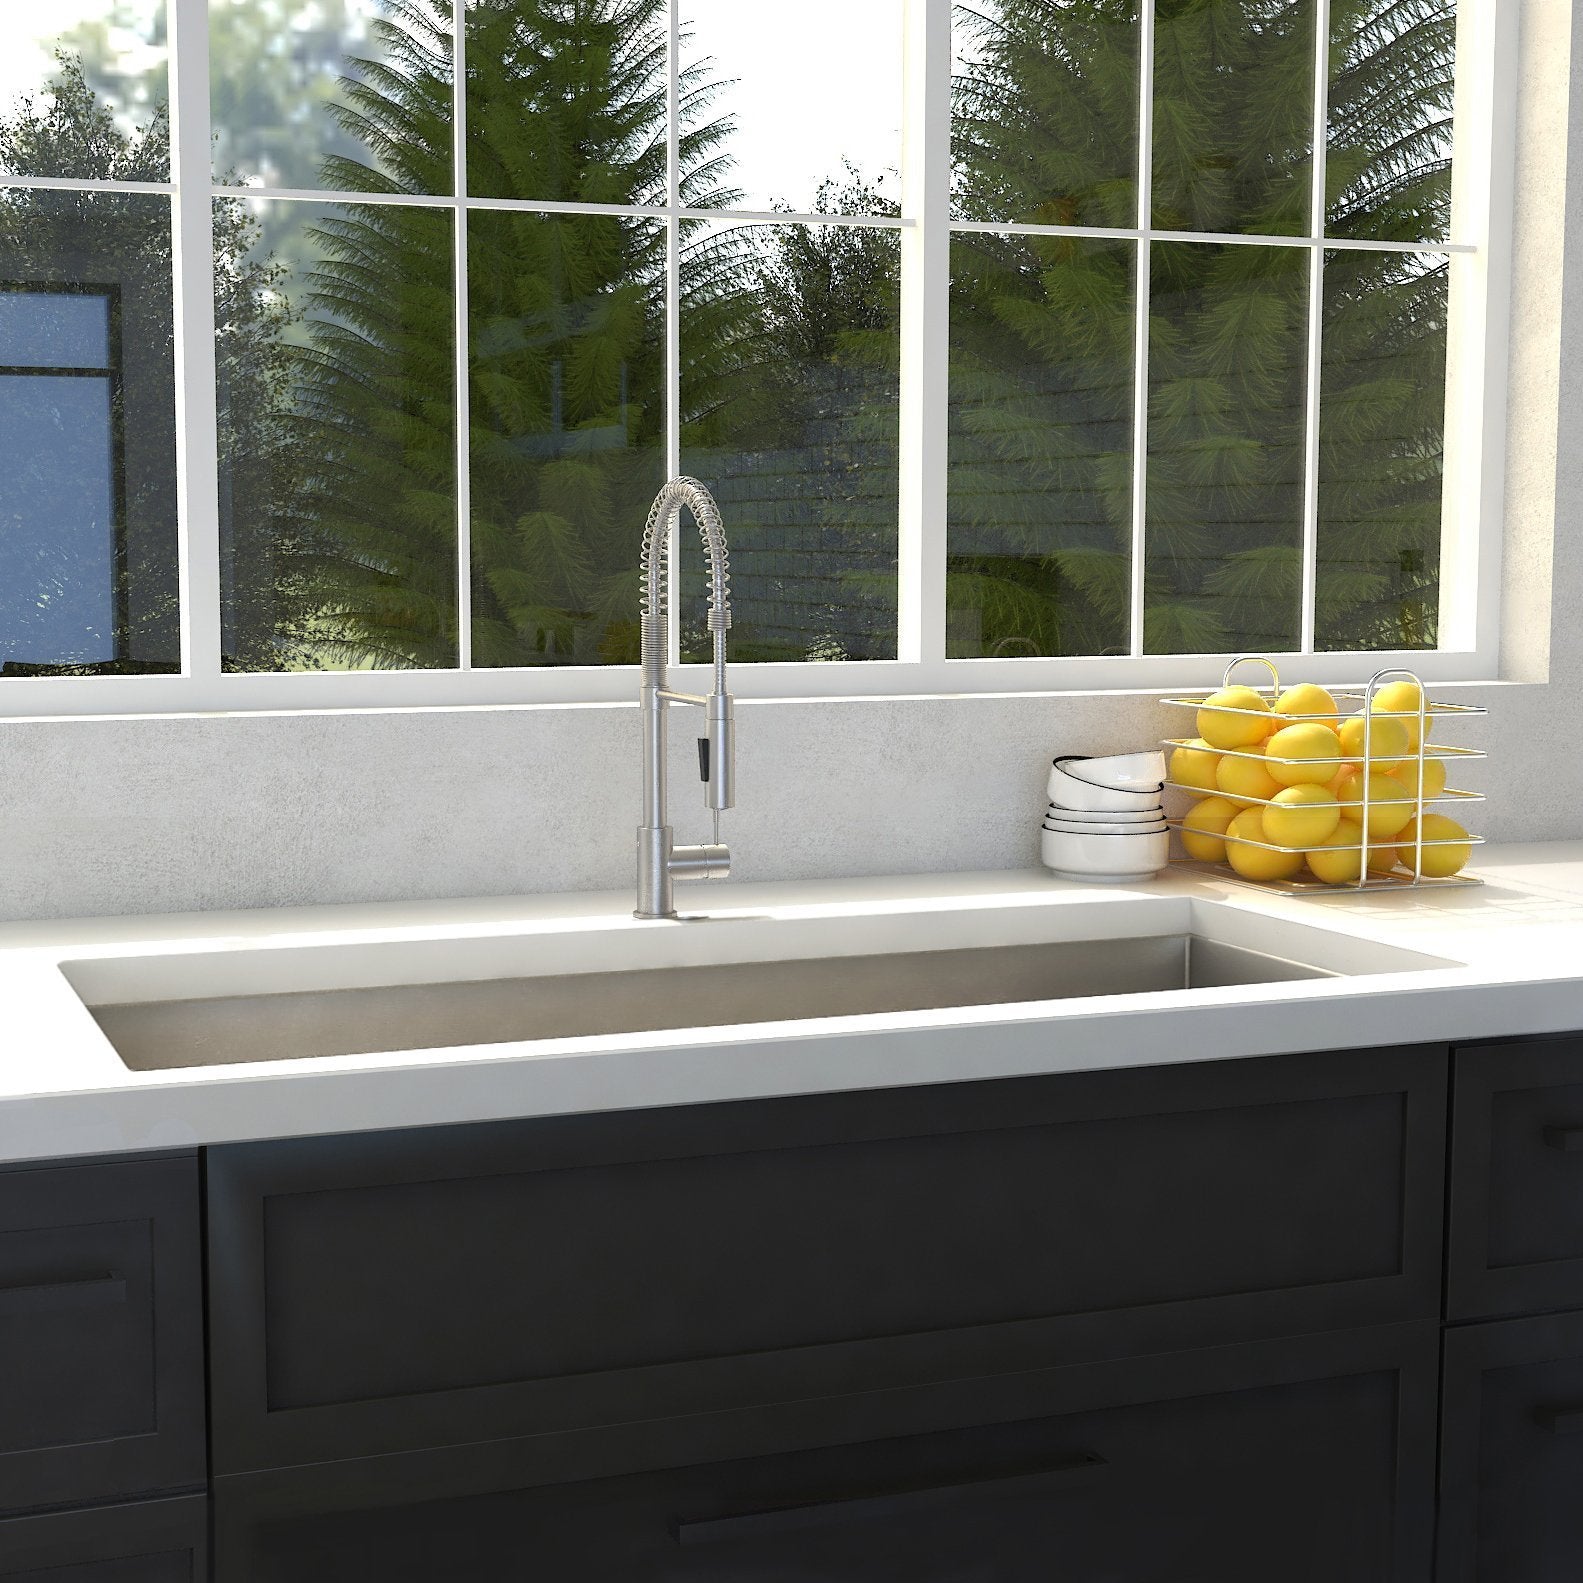 ZLINE 36" Classic Series Undermount Single Bowl Sink (SRS) - Rustic Kitchen & Bath - Sinks - ZLINE Kitchen and Bath